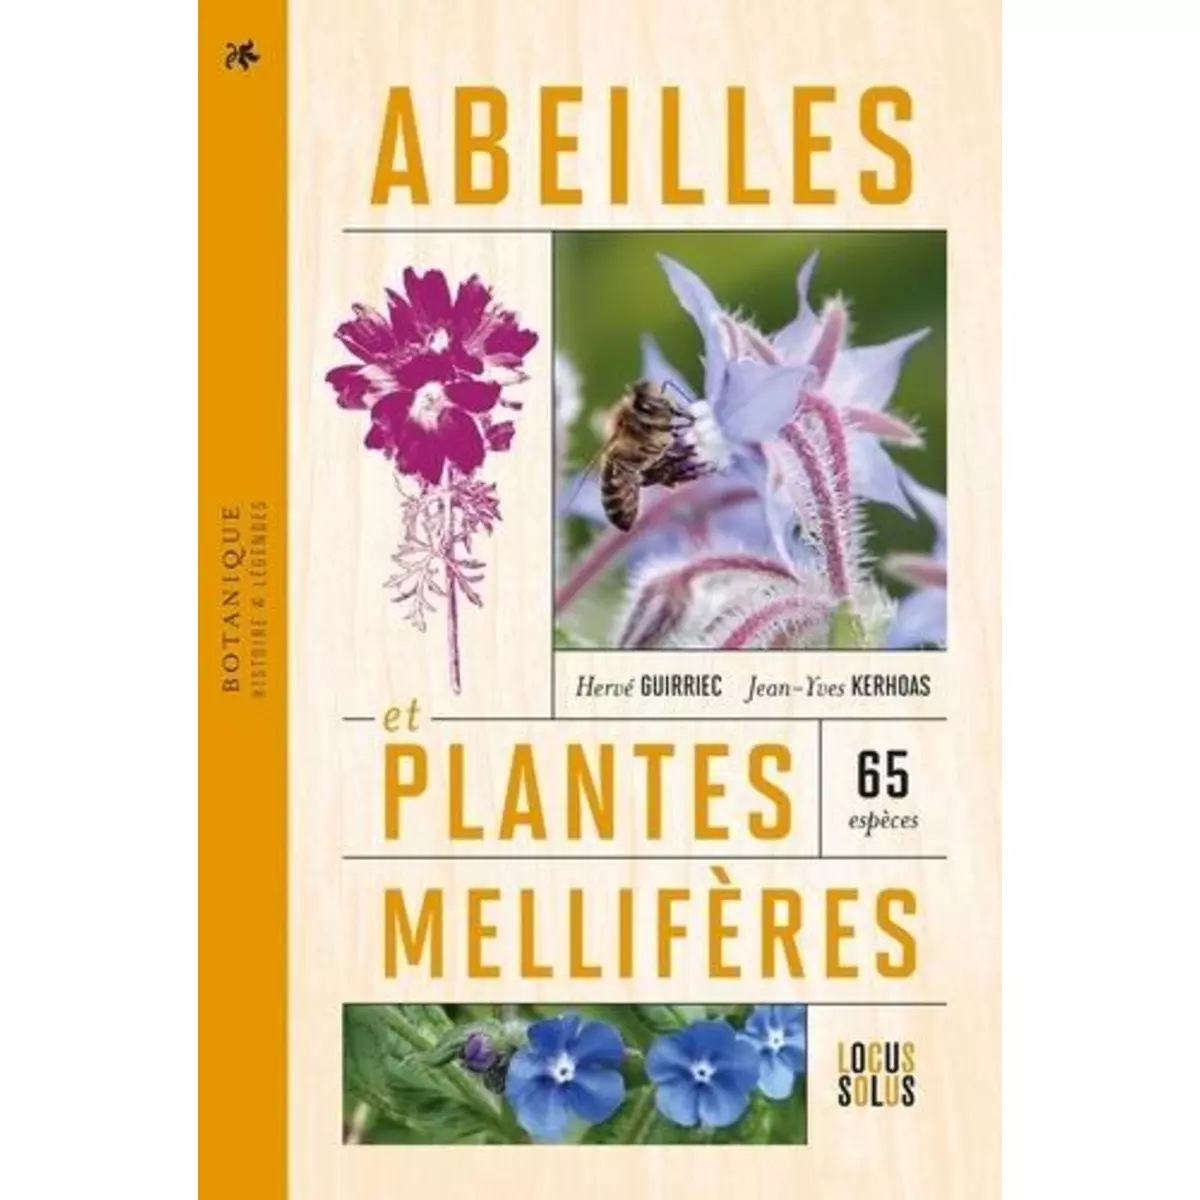  ABEILLES ET PLANTES MELLIFERES. BOTANIQUE - HISTOIRE - LEGENDES, Guirriec Hervé